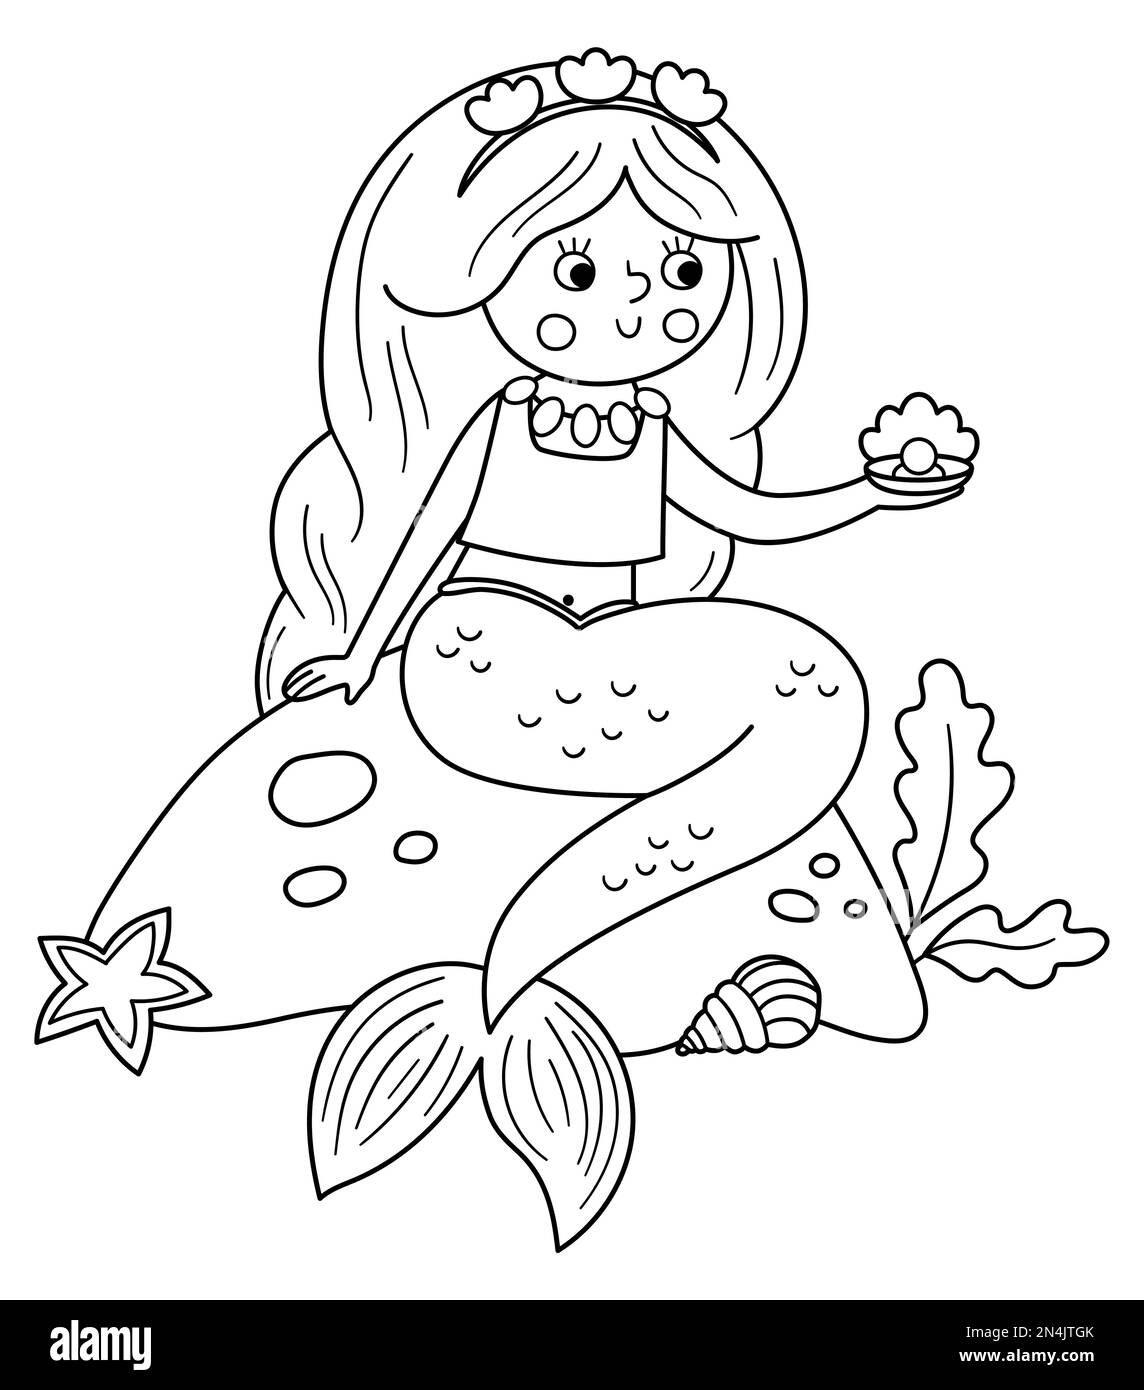 Märchenhafte schwarz-weiße Vektor-Meerjungfrau, die auf einem Stein sitzt und eine Perle hält. Fantasy-Line-Girl in der Krone. Märchenhafte Meeres-Prinzessin mit rosa Haaren. Mädchen Stock Vektor